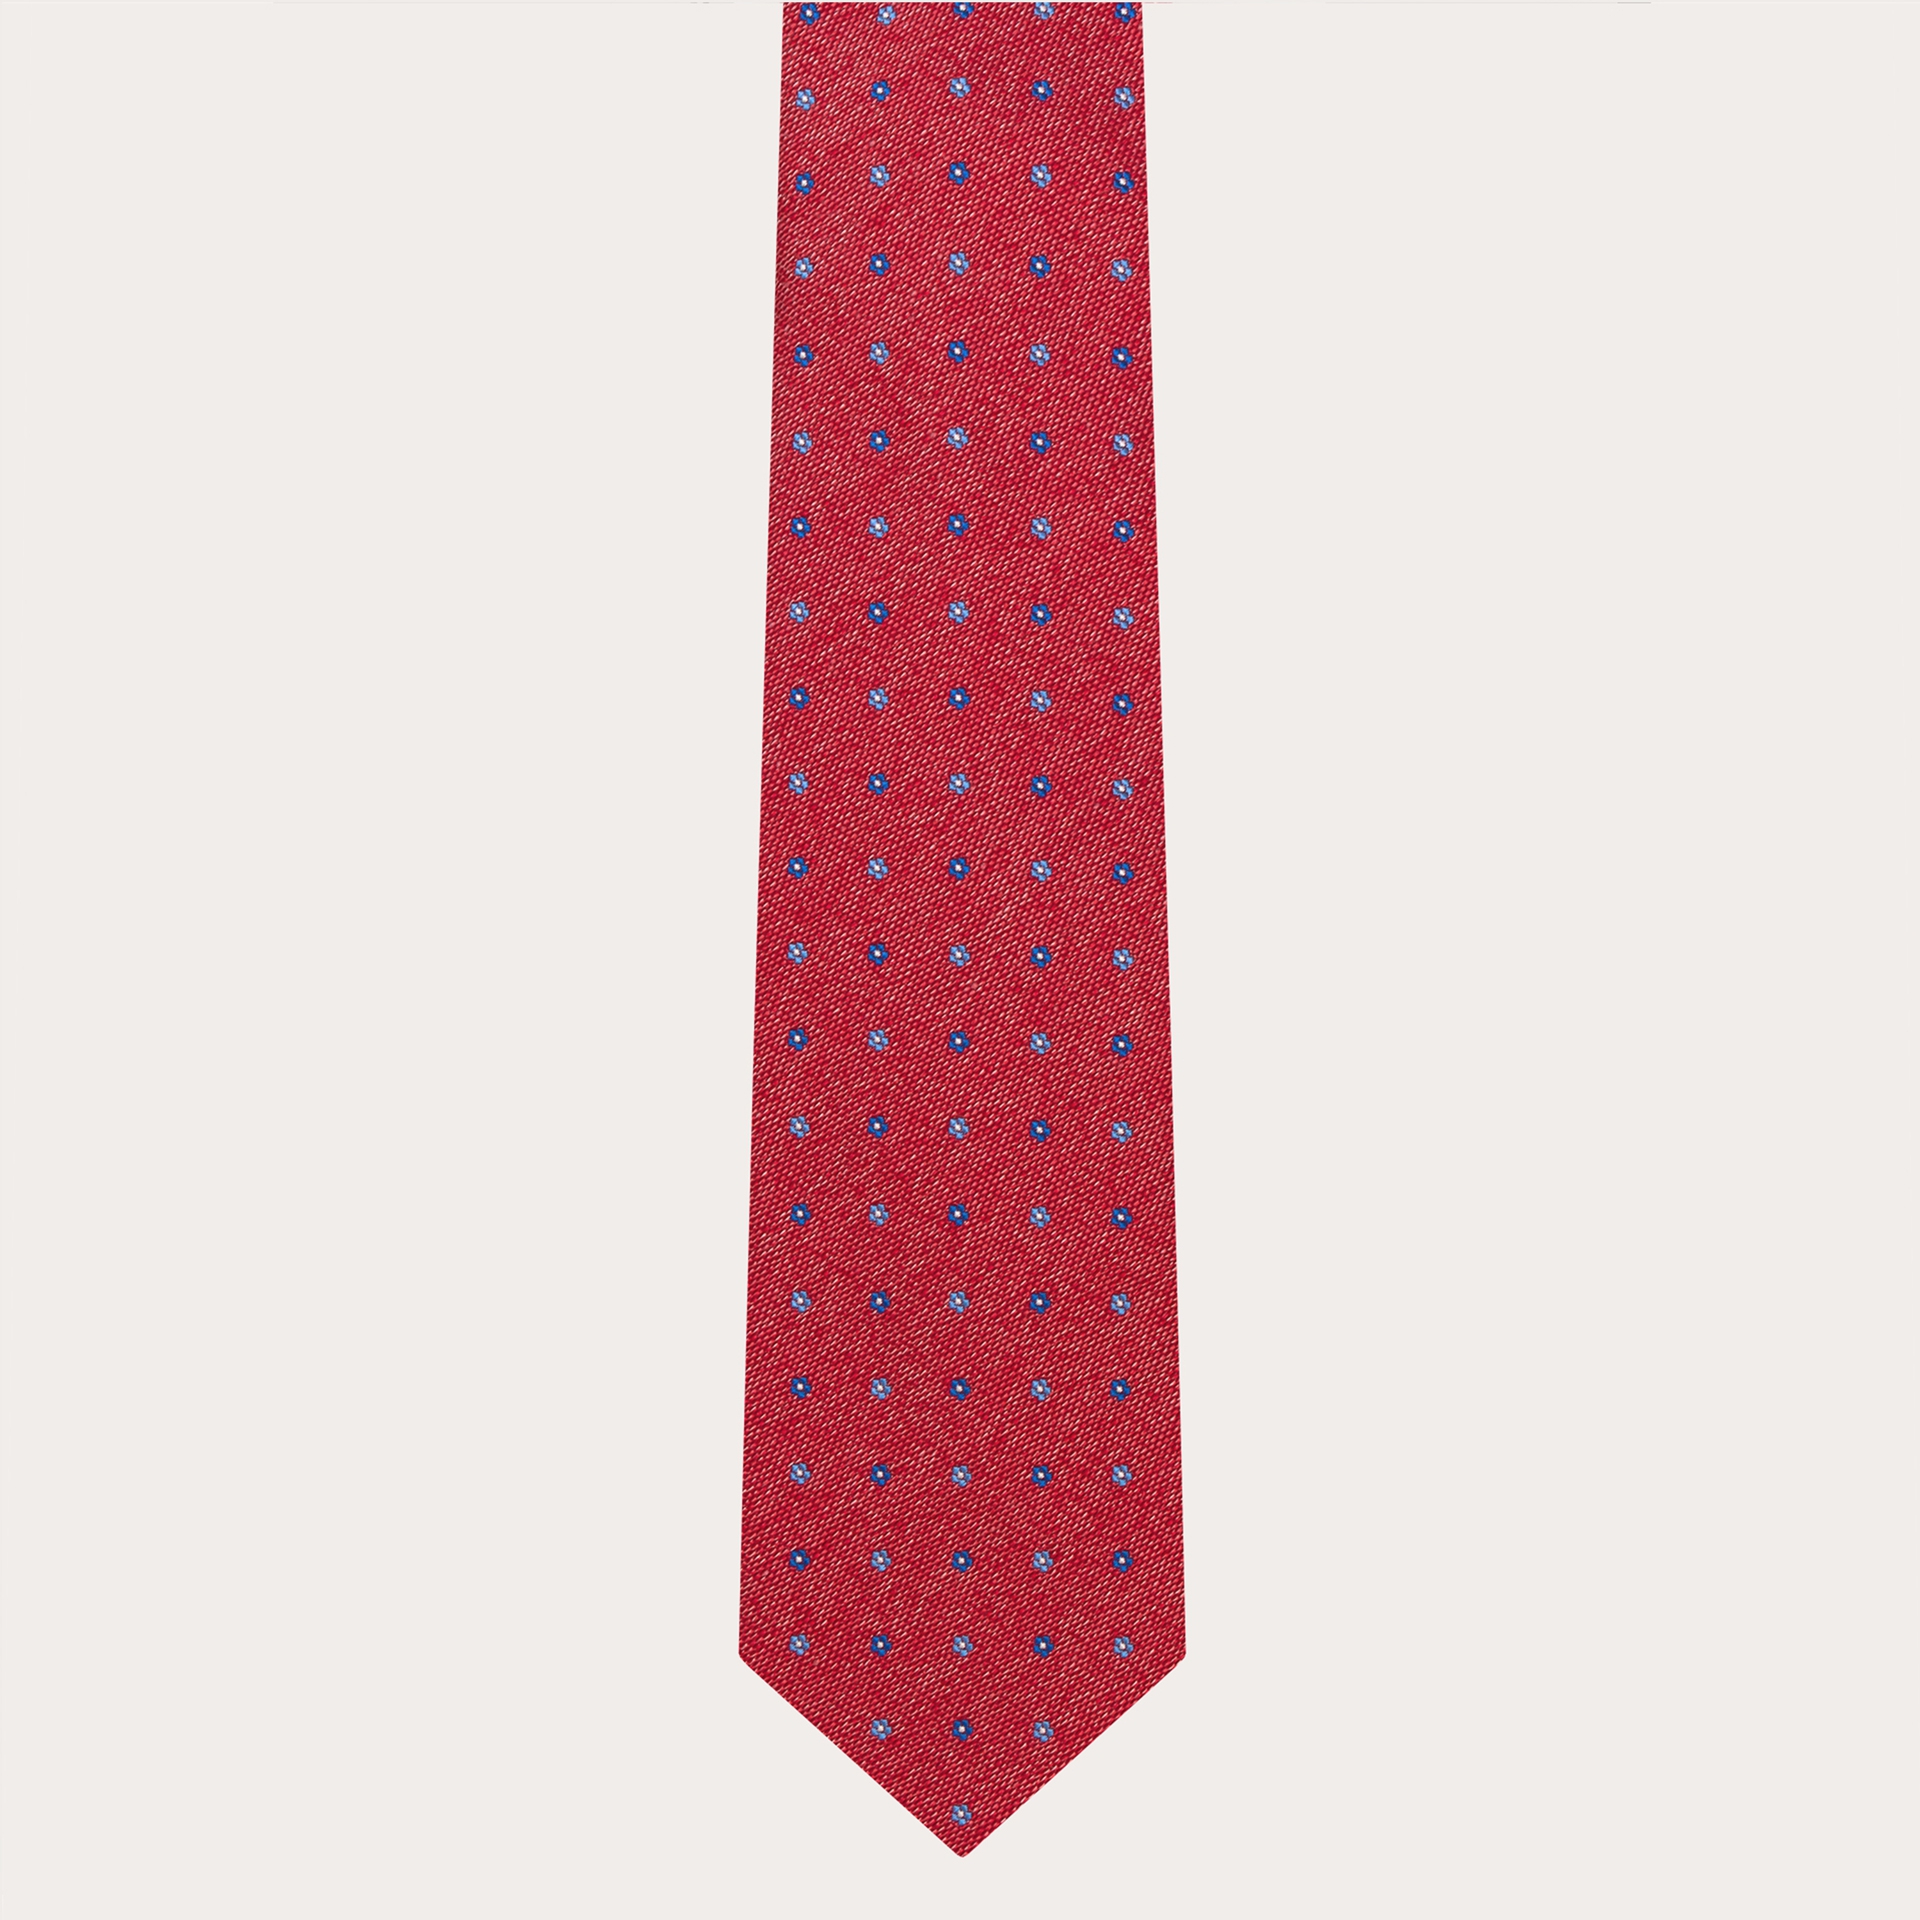 Cravate en jacquard de soie italienne, rouge à motif fleuri